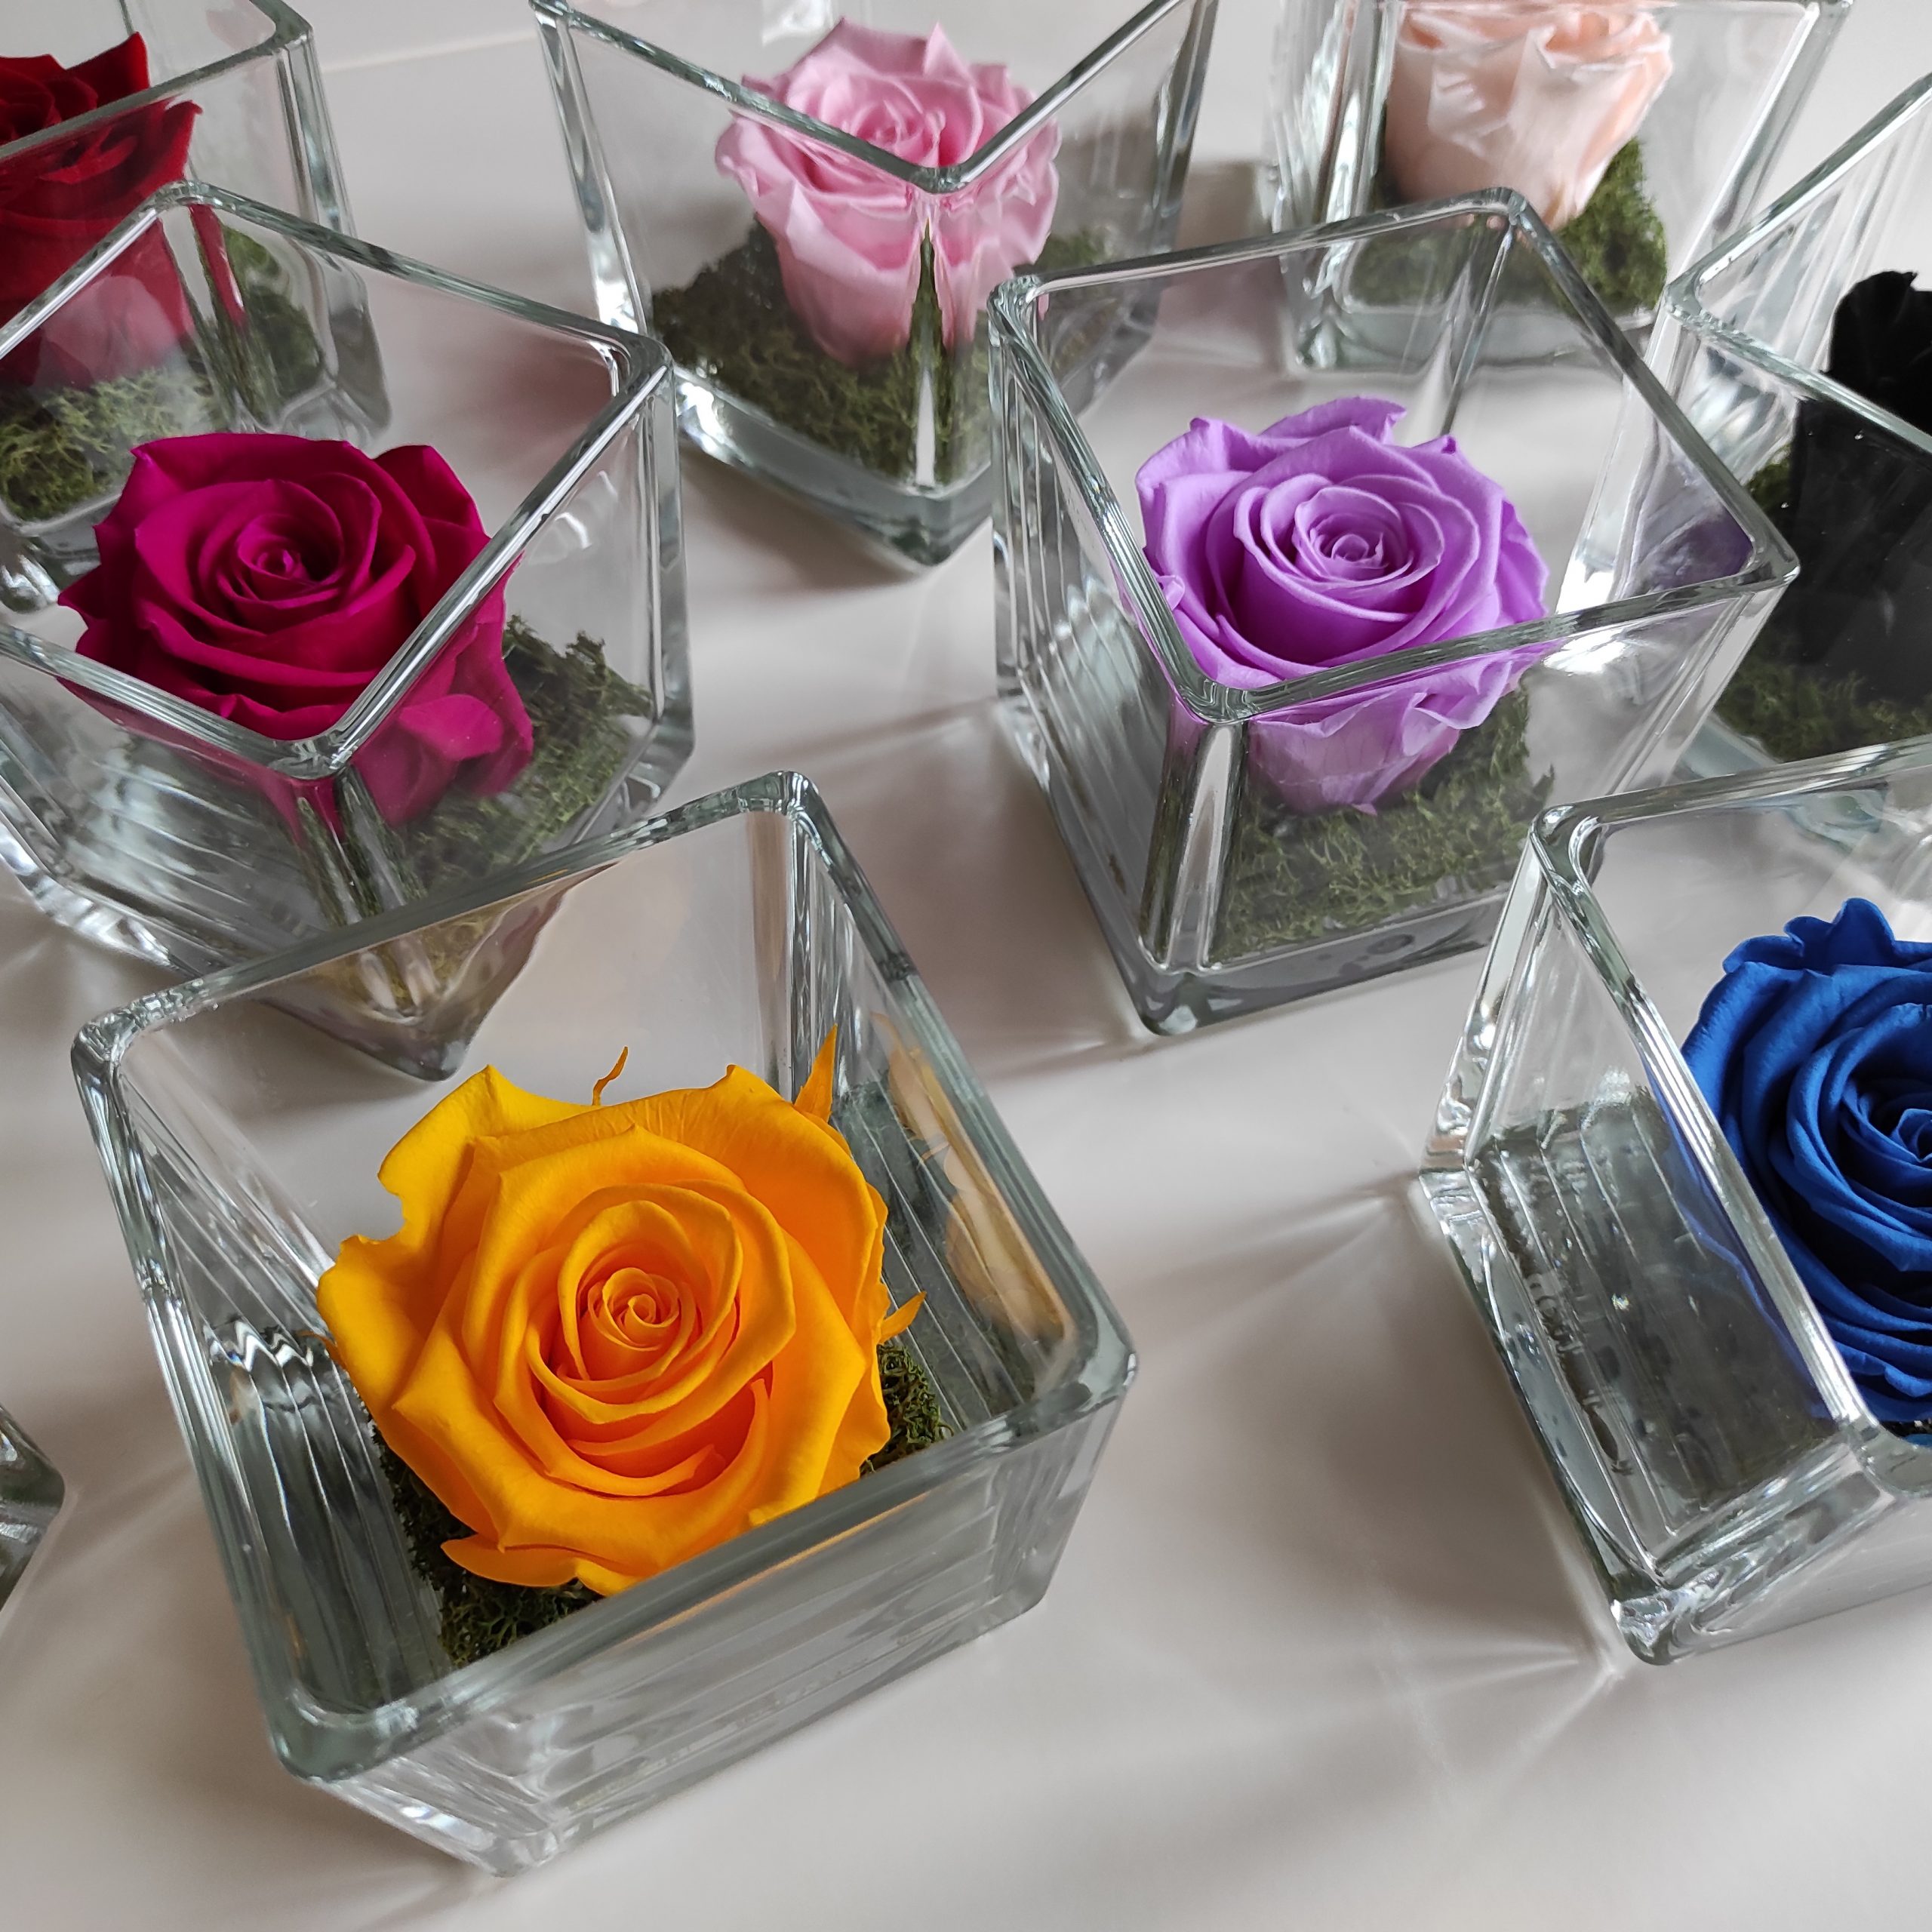 tante rose stabilizzate di colori diversi in cubi di vetro su tavolo bianco